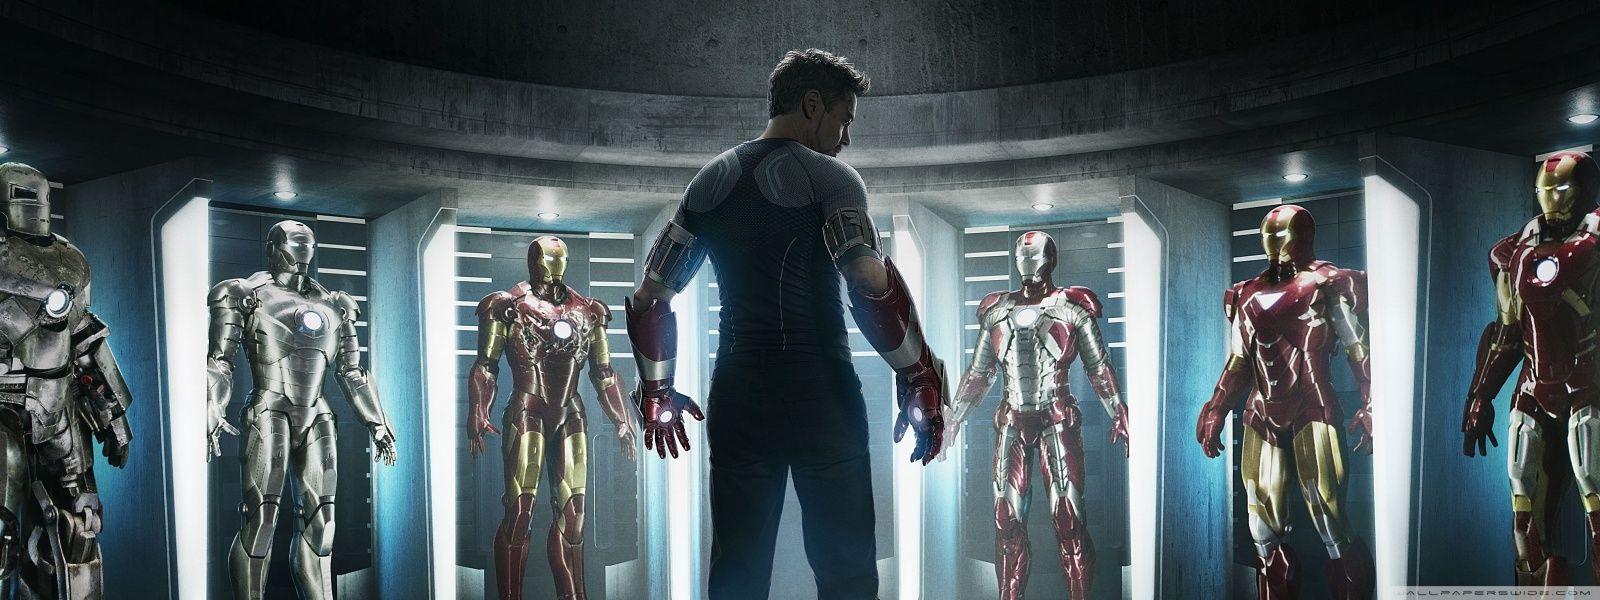 Hãy thưởng thức chất lượng hình nền độ phân giải 4K siêu sắc nét của Iron Man. Nhìn vào bức tranh với màu sắc sống động và chi tiết tuyệt vời, bạn sẽ cảm nhận sự vĩnh cửu của nhân vật yêu thích này.